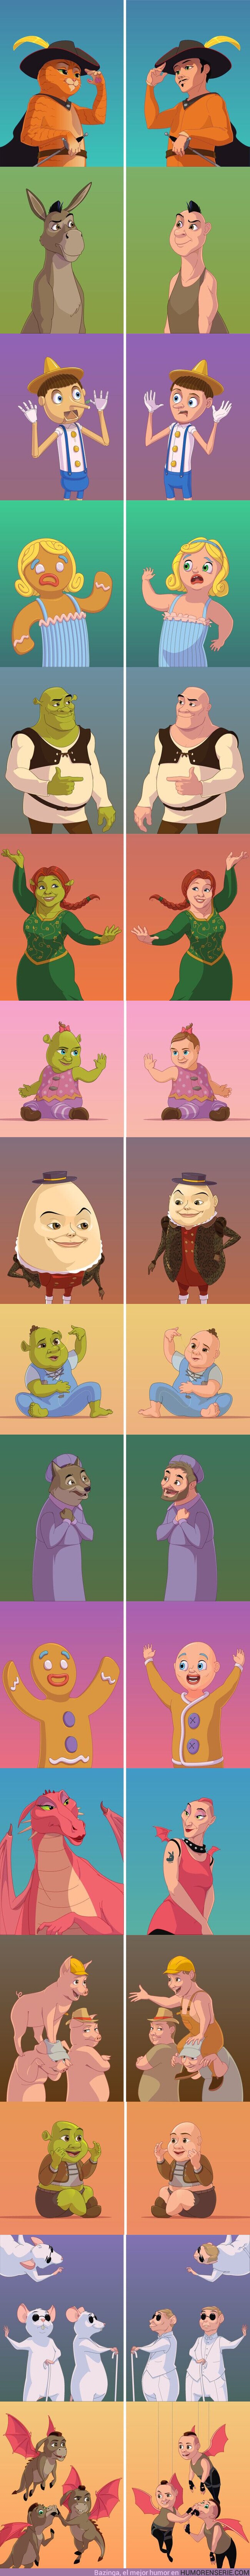 67012 - GALERÍA: Cómo se verían los personajes de “Shrek” si fueran humanos